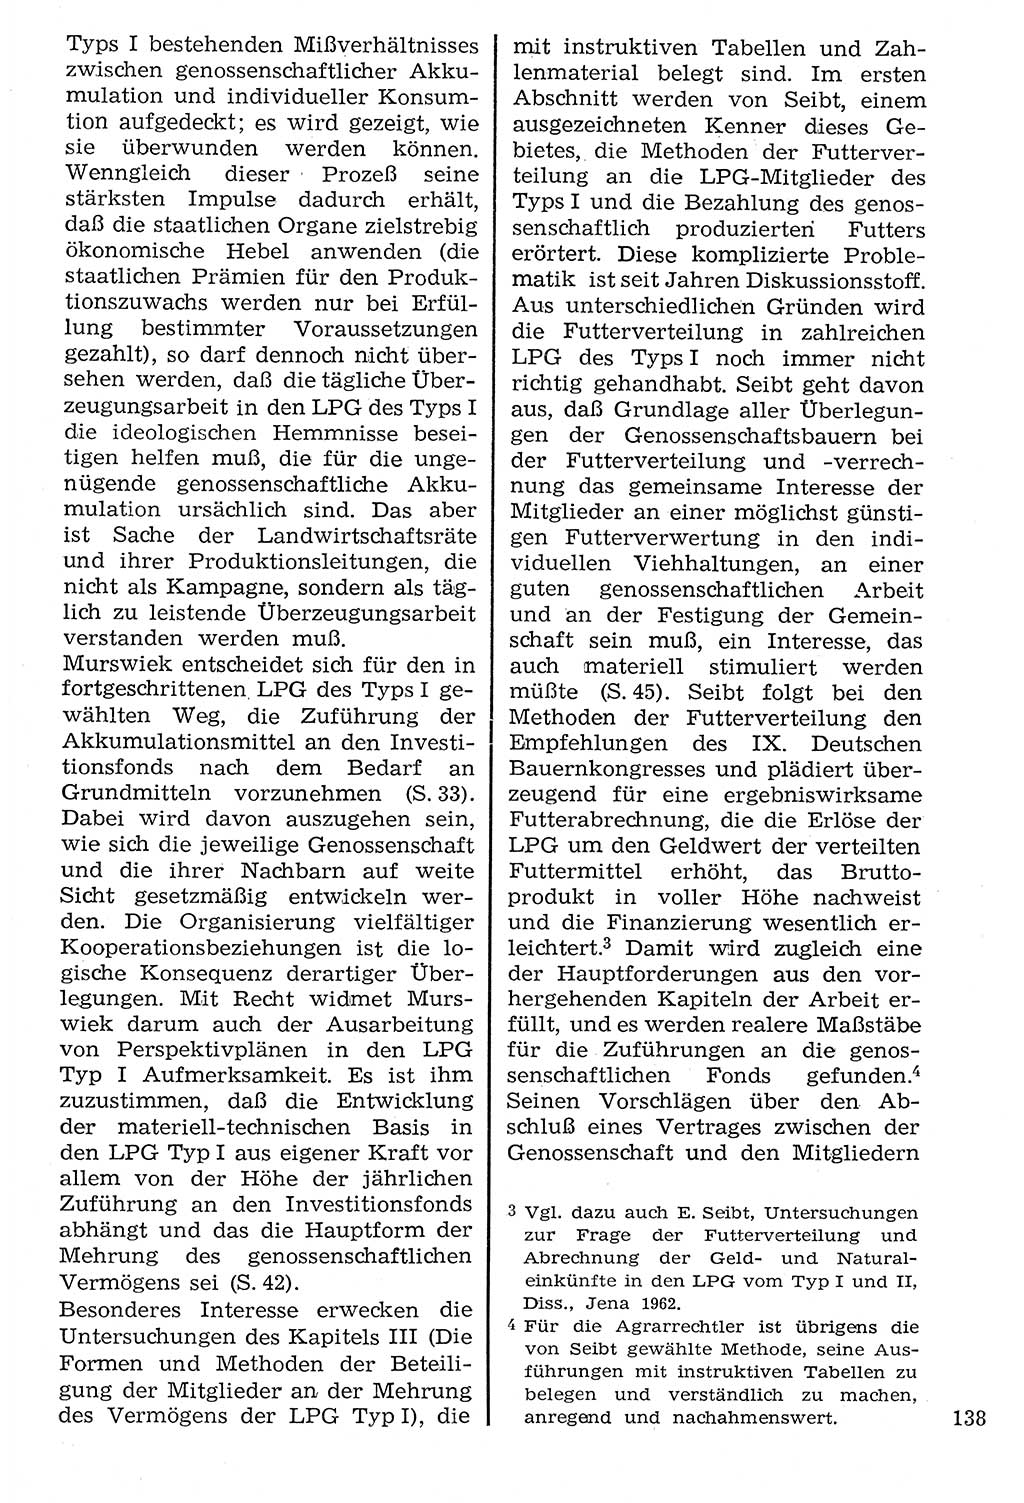 Staat und Recht (StuR), 17. Jahrgang [Deutsche Demokratische Republik (DDR)] 1968, Seite 138 (StuR DDR 1968, S. 138)